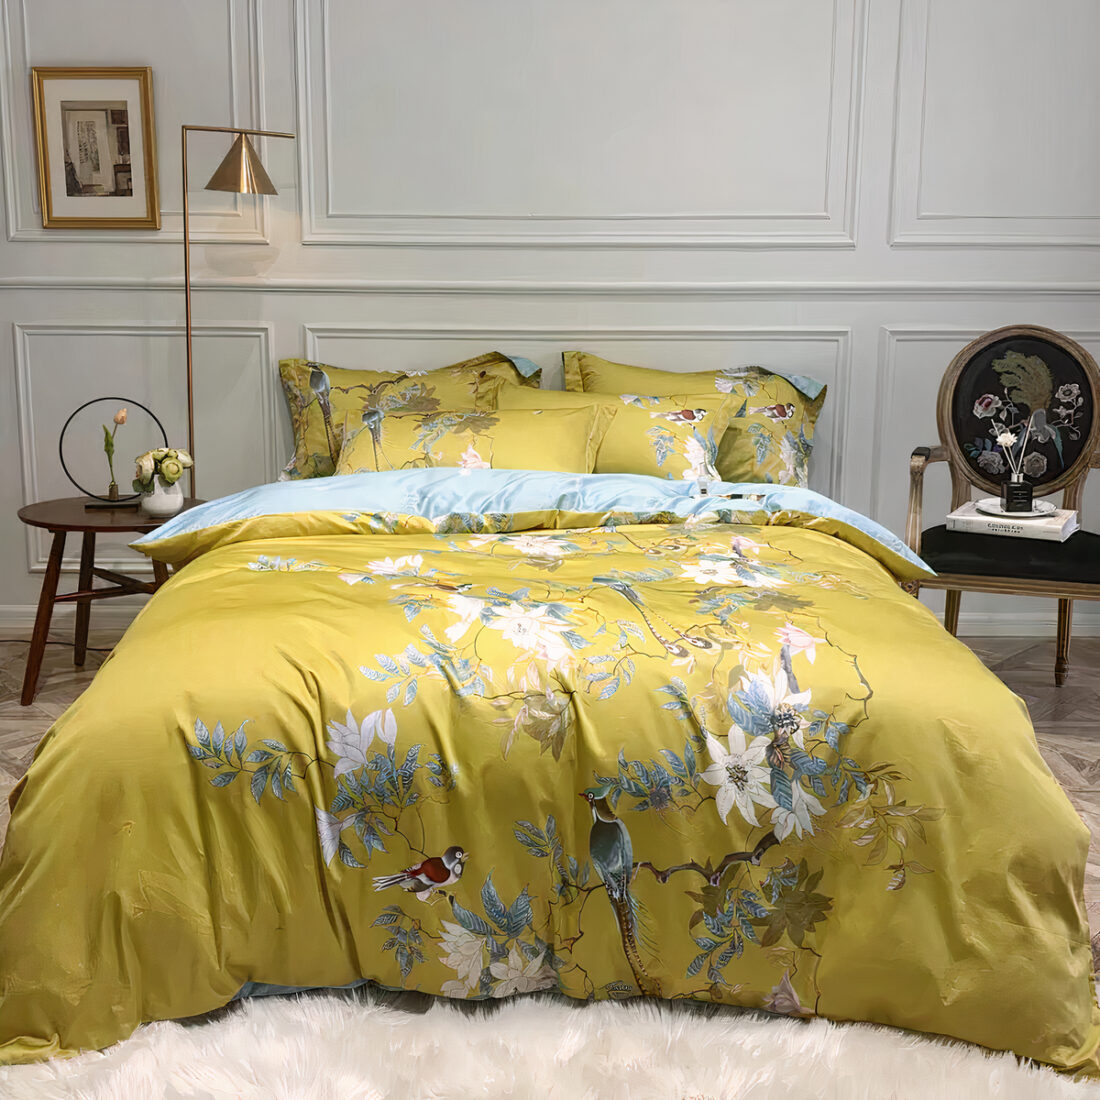 Lit avec des draps jaunes aux motifs de fleurs et d'oiseaux dans une chambre avec du parquet, des fleurs blanches et un miroir rond au mur